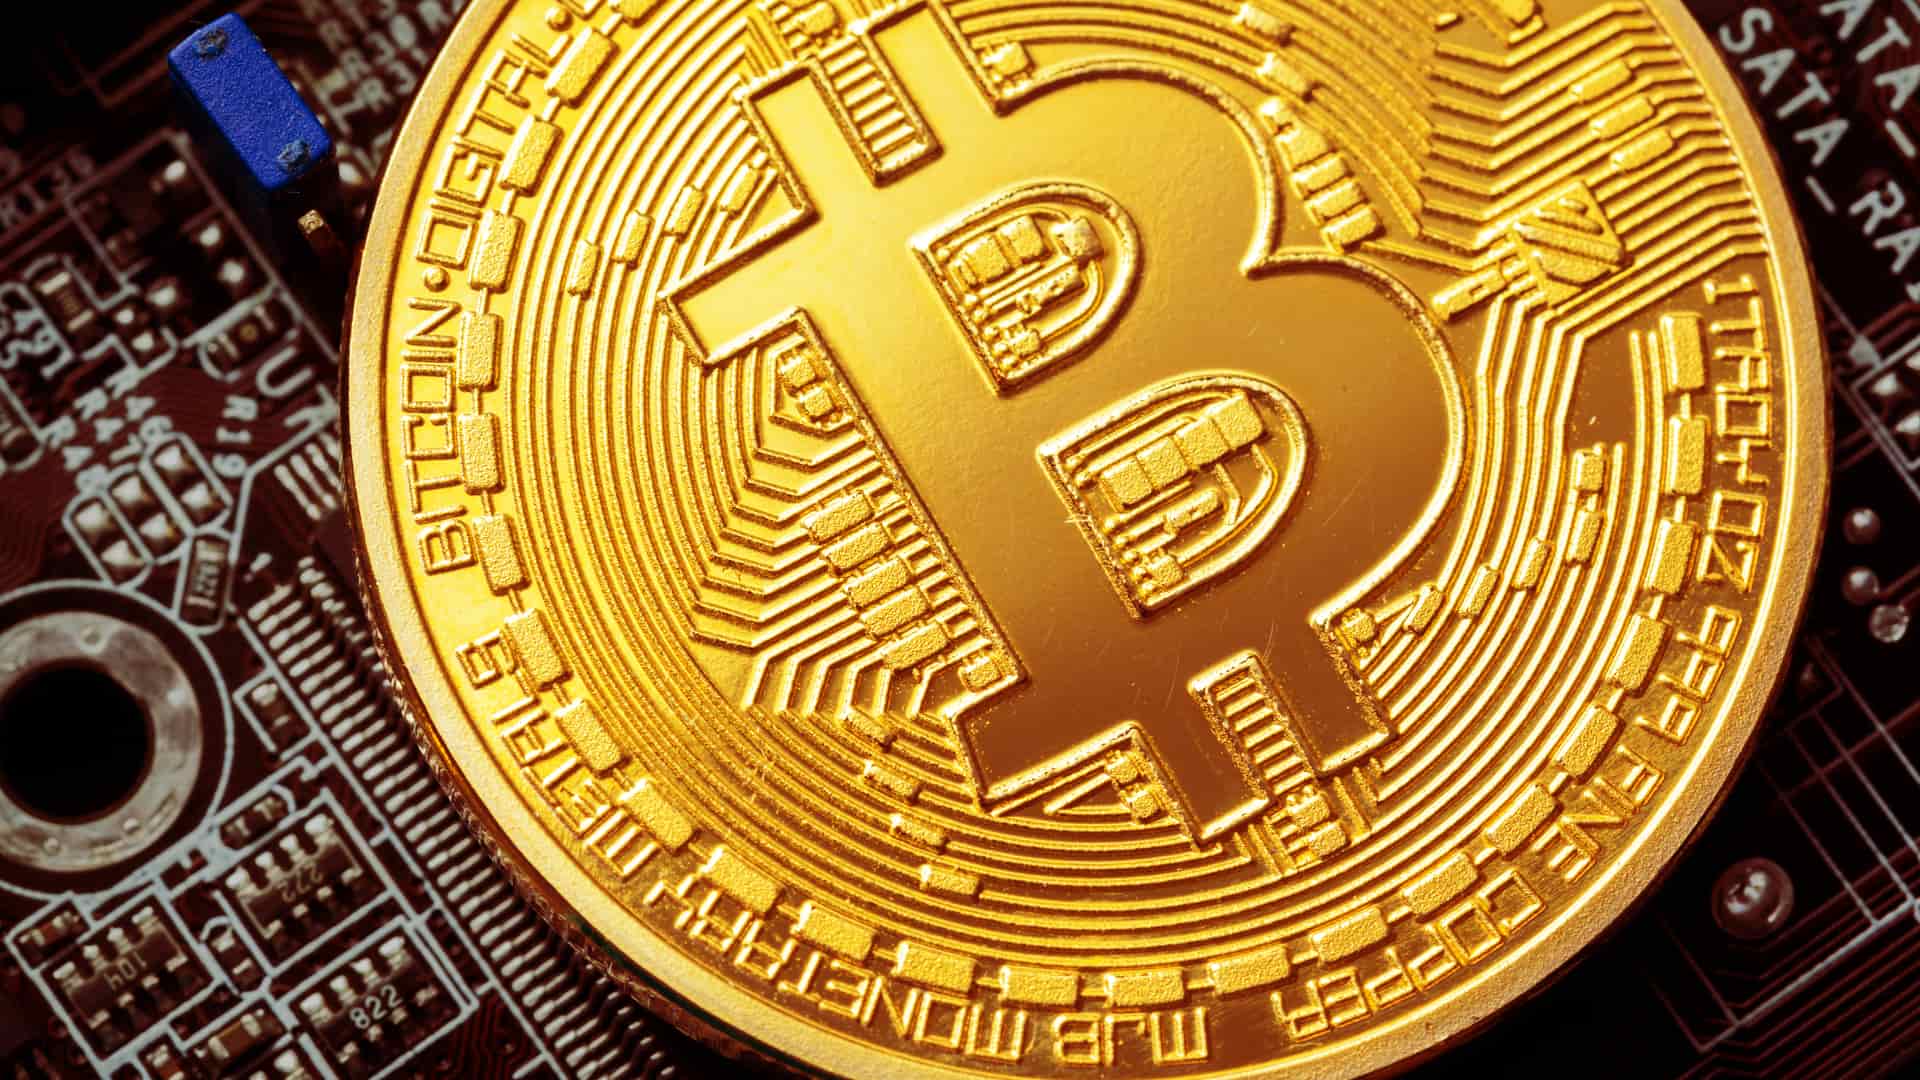 Representación física de bitcoin la criptomoneda original y la más conocida